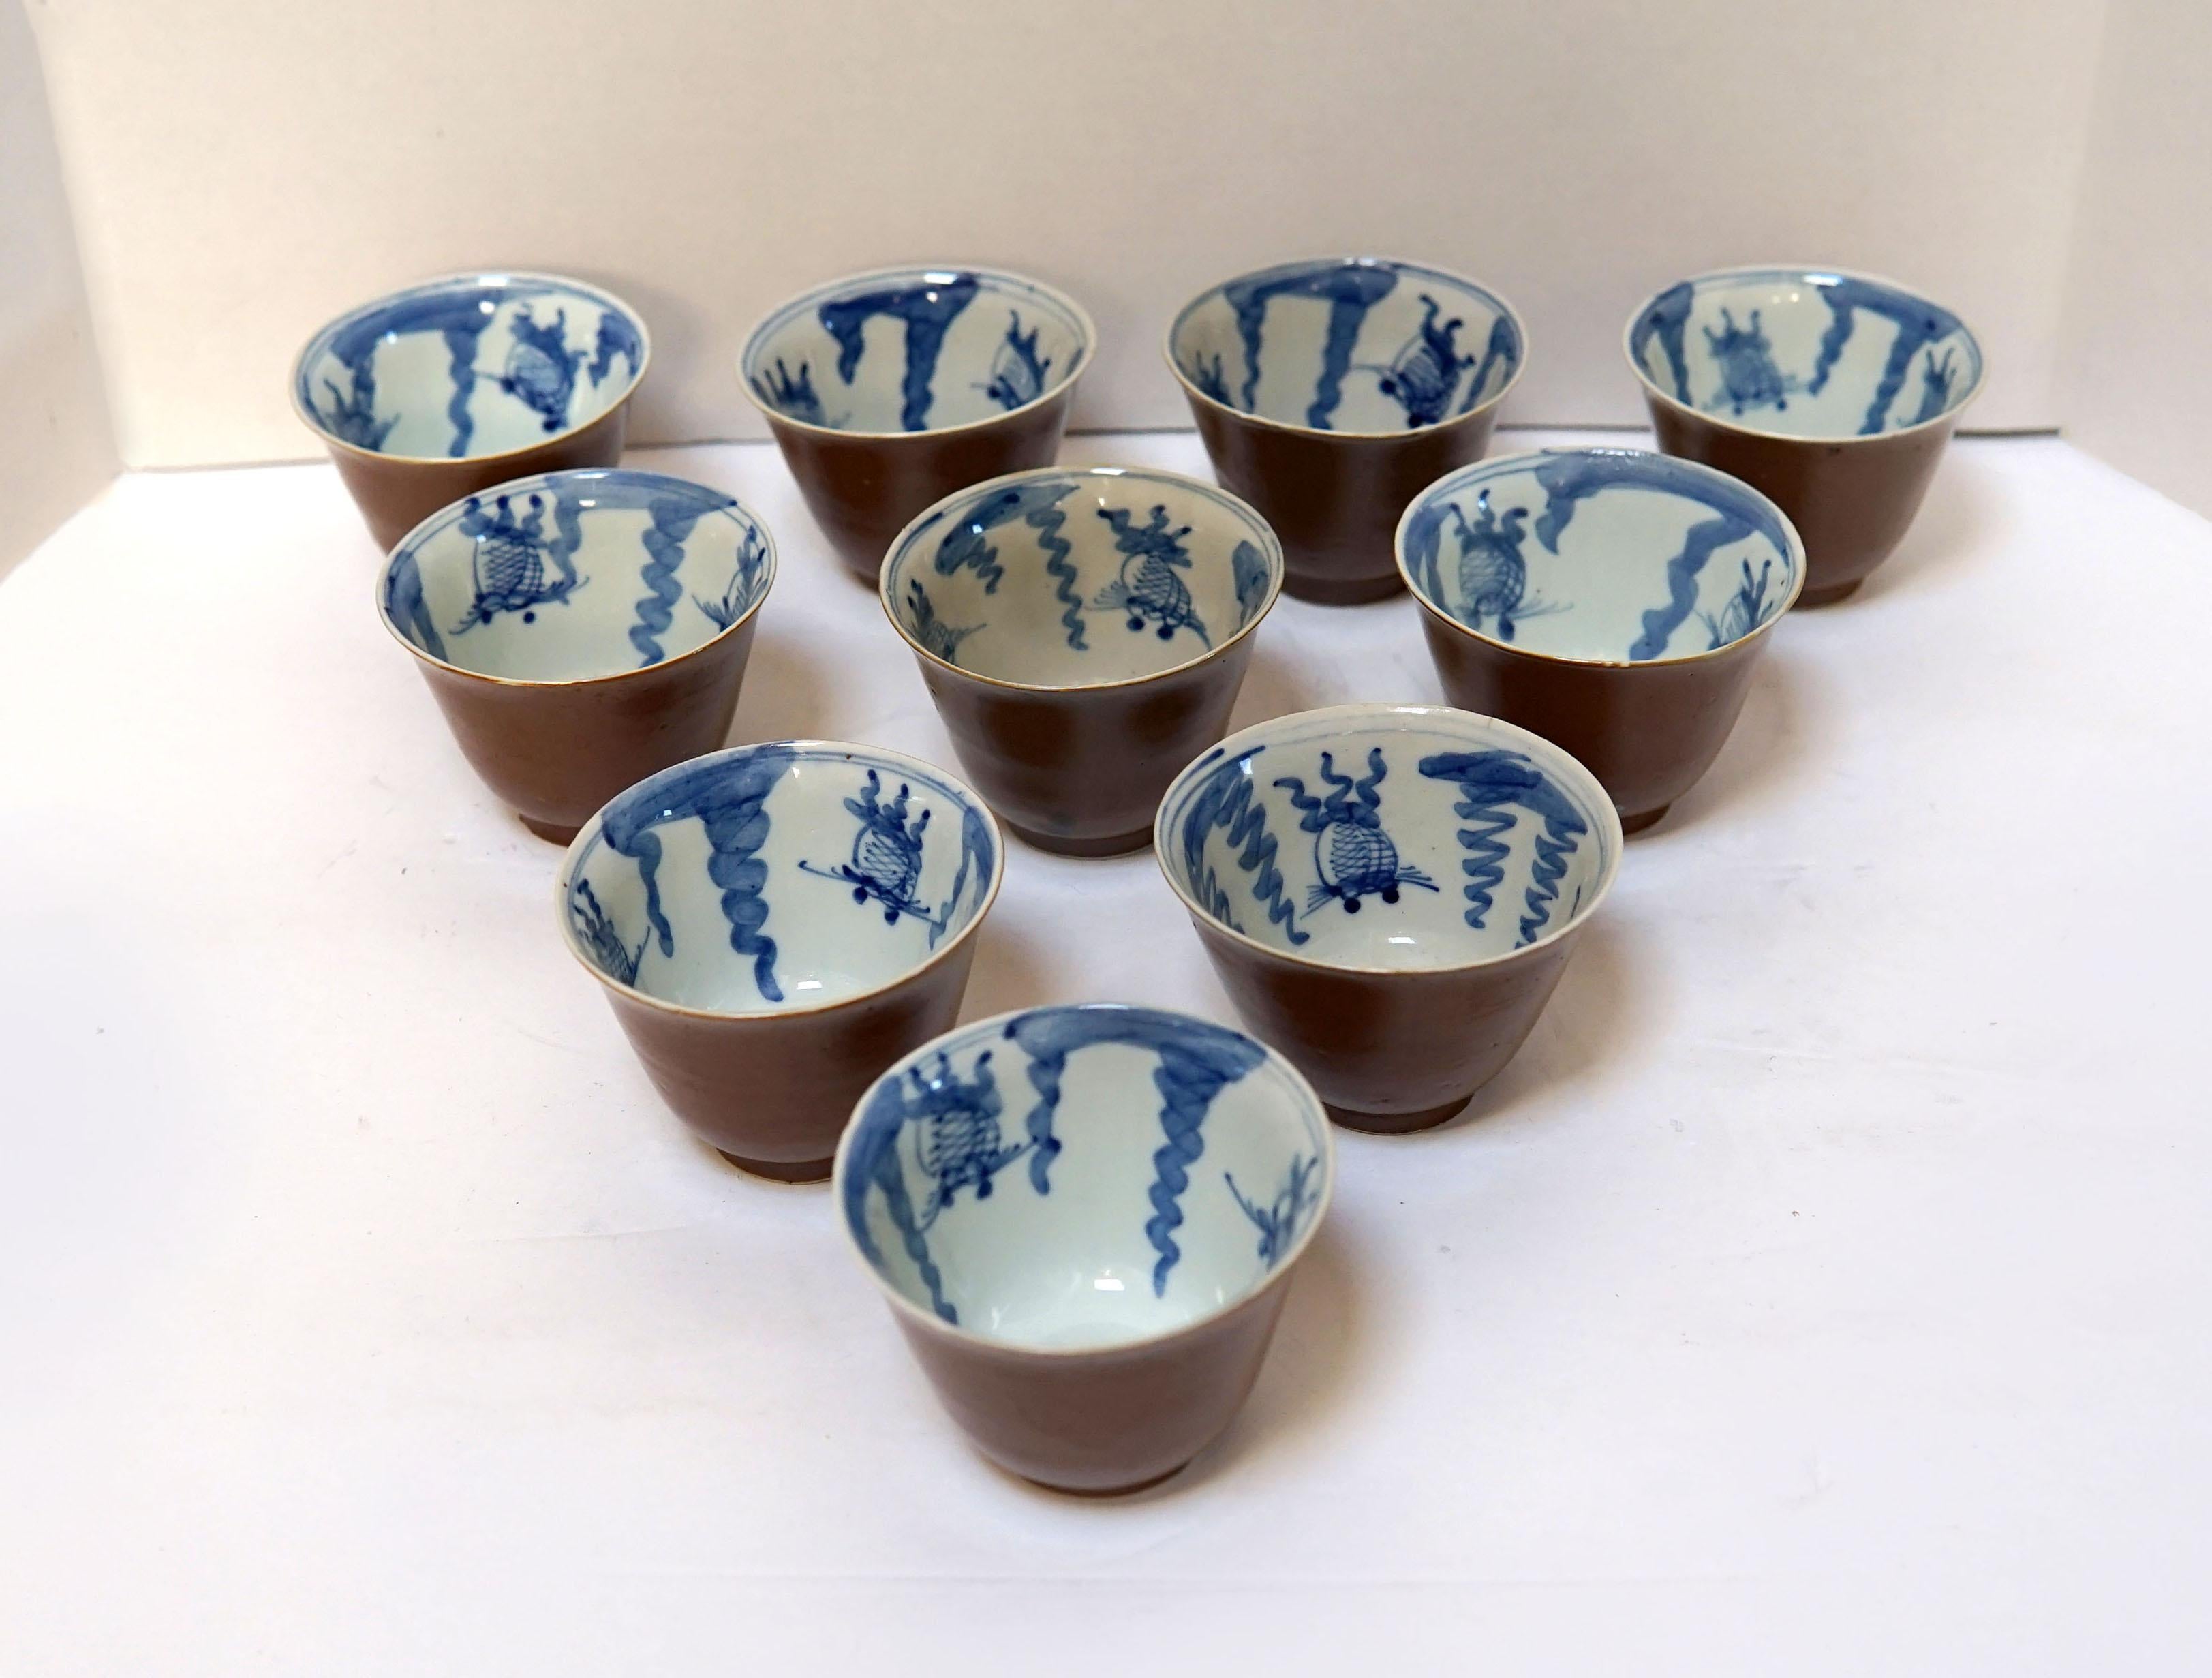 Cet ensemble de bols à thé vintage et d'une théière en argent ou en zinc du Japon du 19e siècle est inhabituel. 
L'ensemble provient d'un lot de céramiques vendu aux enchères, qui comprenait 10 bols à thé en porcelaine bleue et blanche 